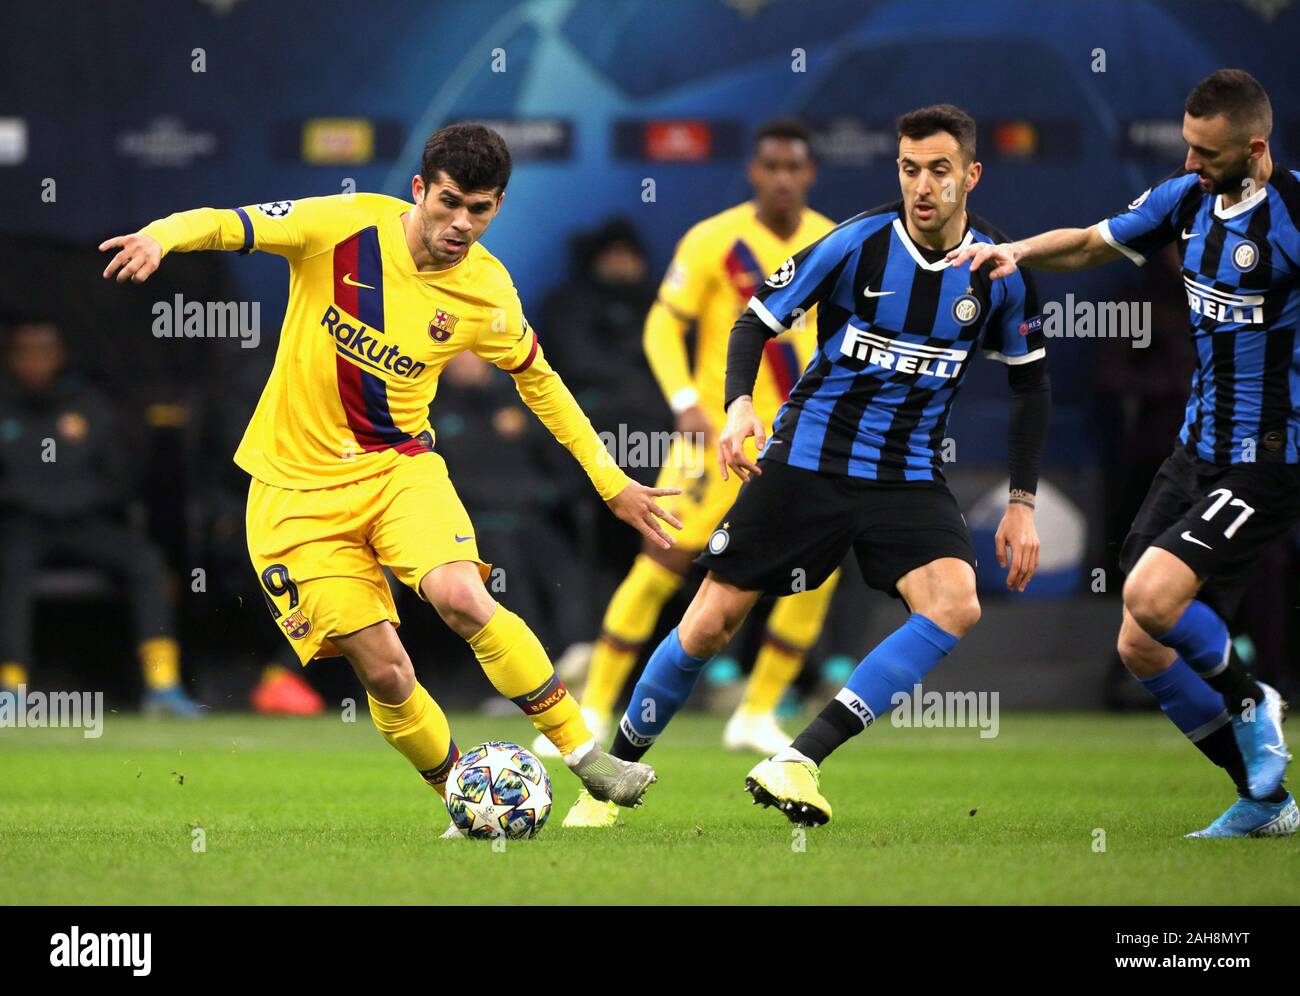 Milan, ITALIE - 10 décembre 2019: Carles Alena et Matias Vecino en action la Ligue des Champions de l'UEFA 2019/2020 INTER / BARCELONE au stade San Siro. Banque D'Images